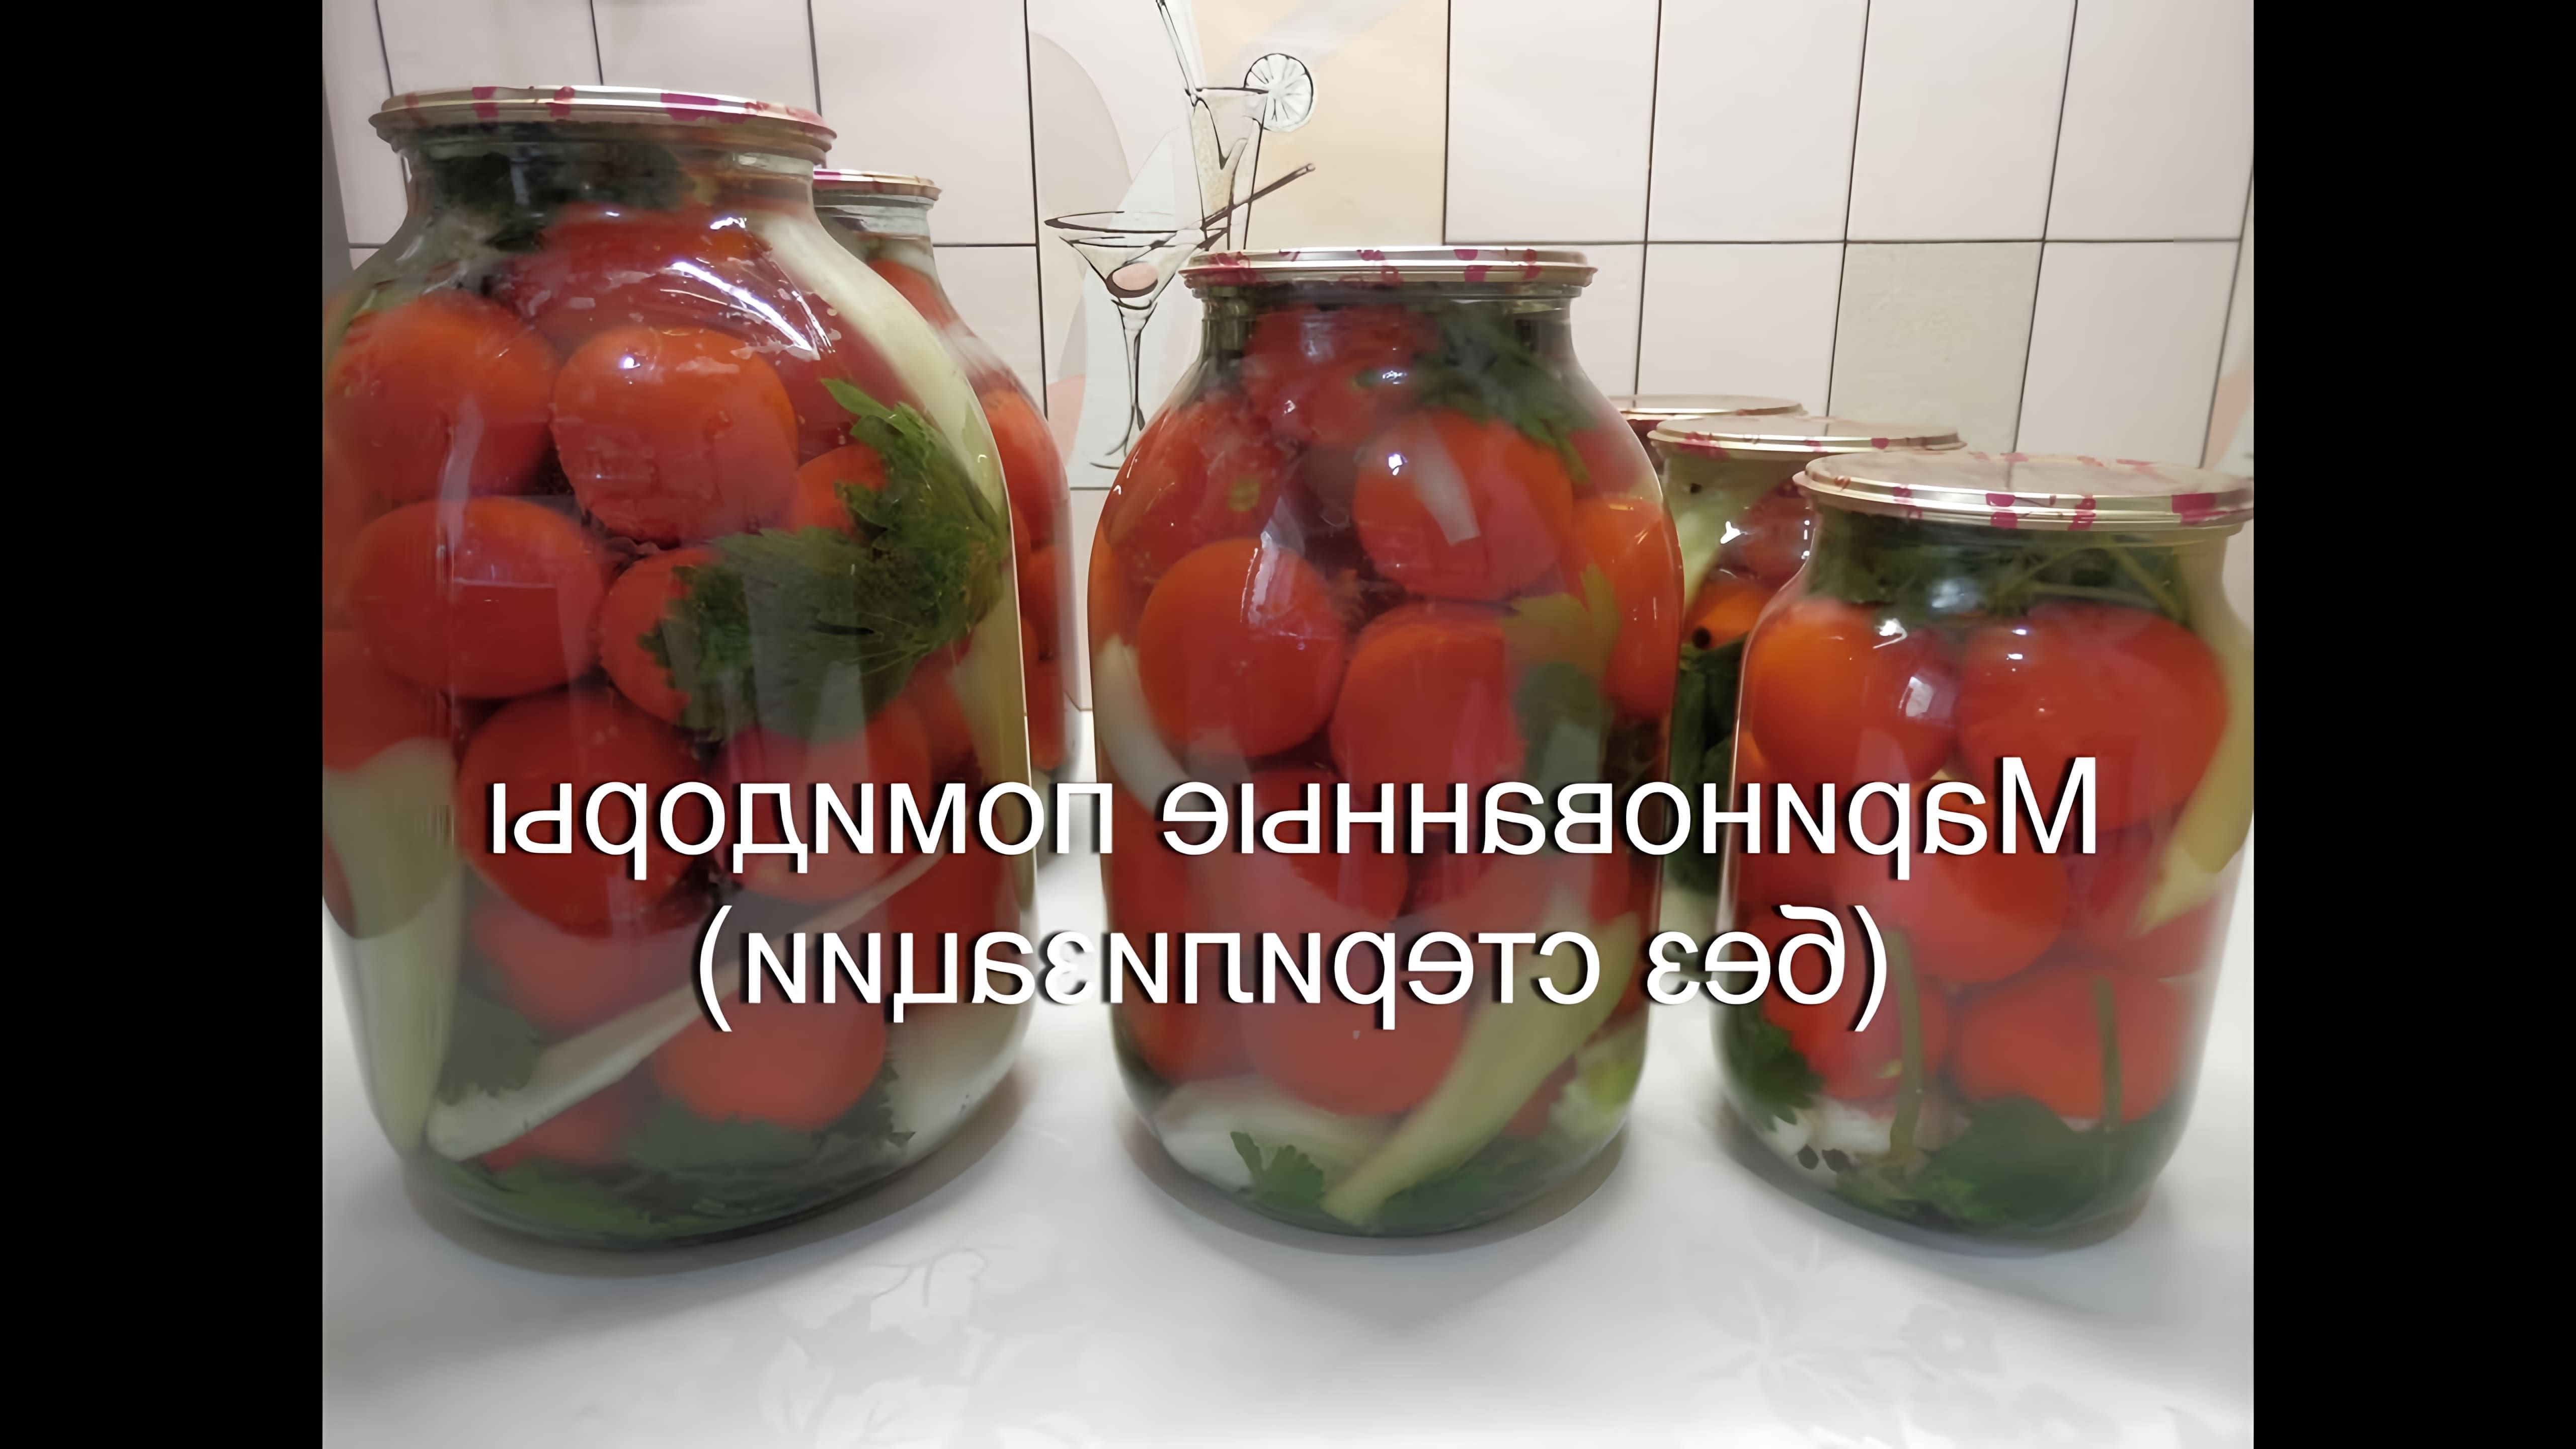 В данном видео демонстрируется процесс консервирования маринованных помидоров без стерилизации